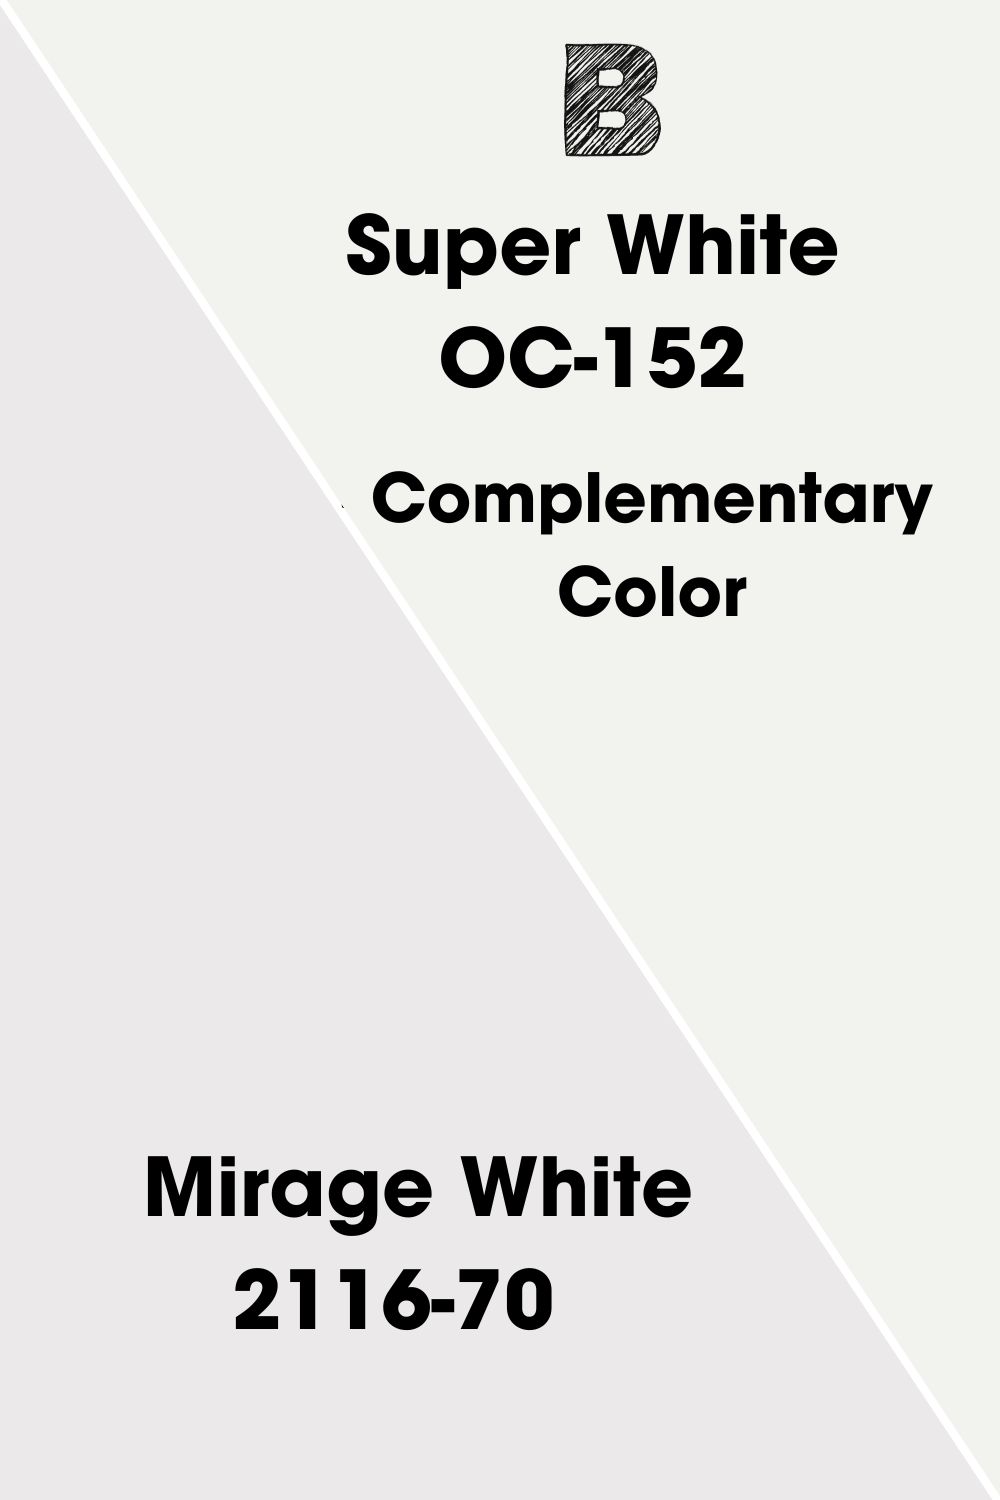  Mirage White 2116-70 